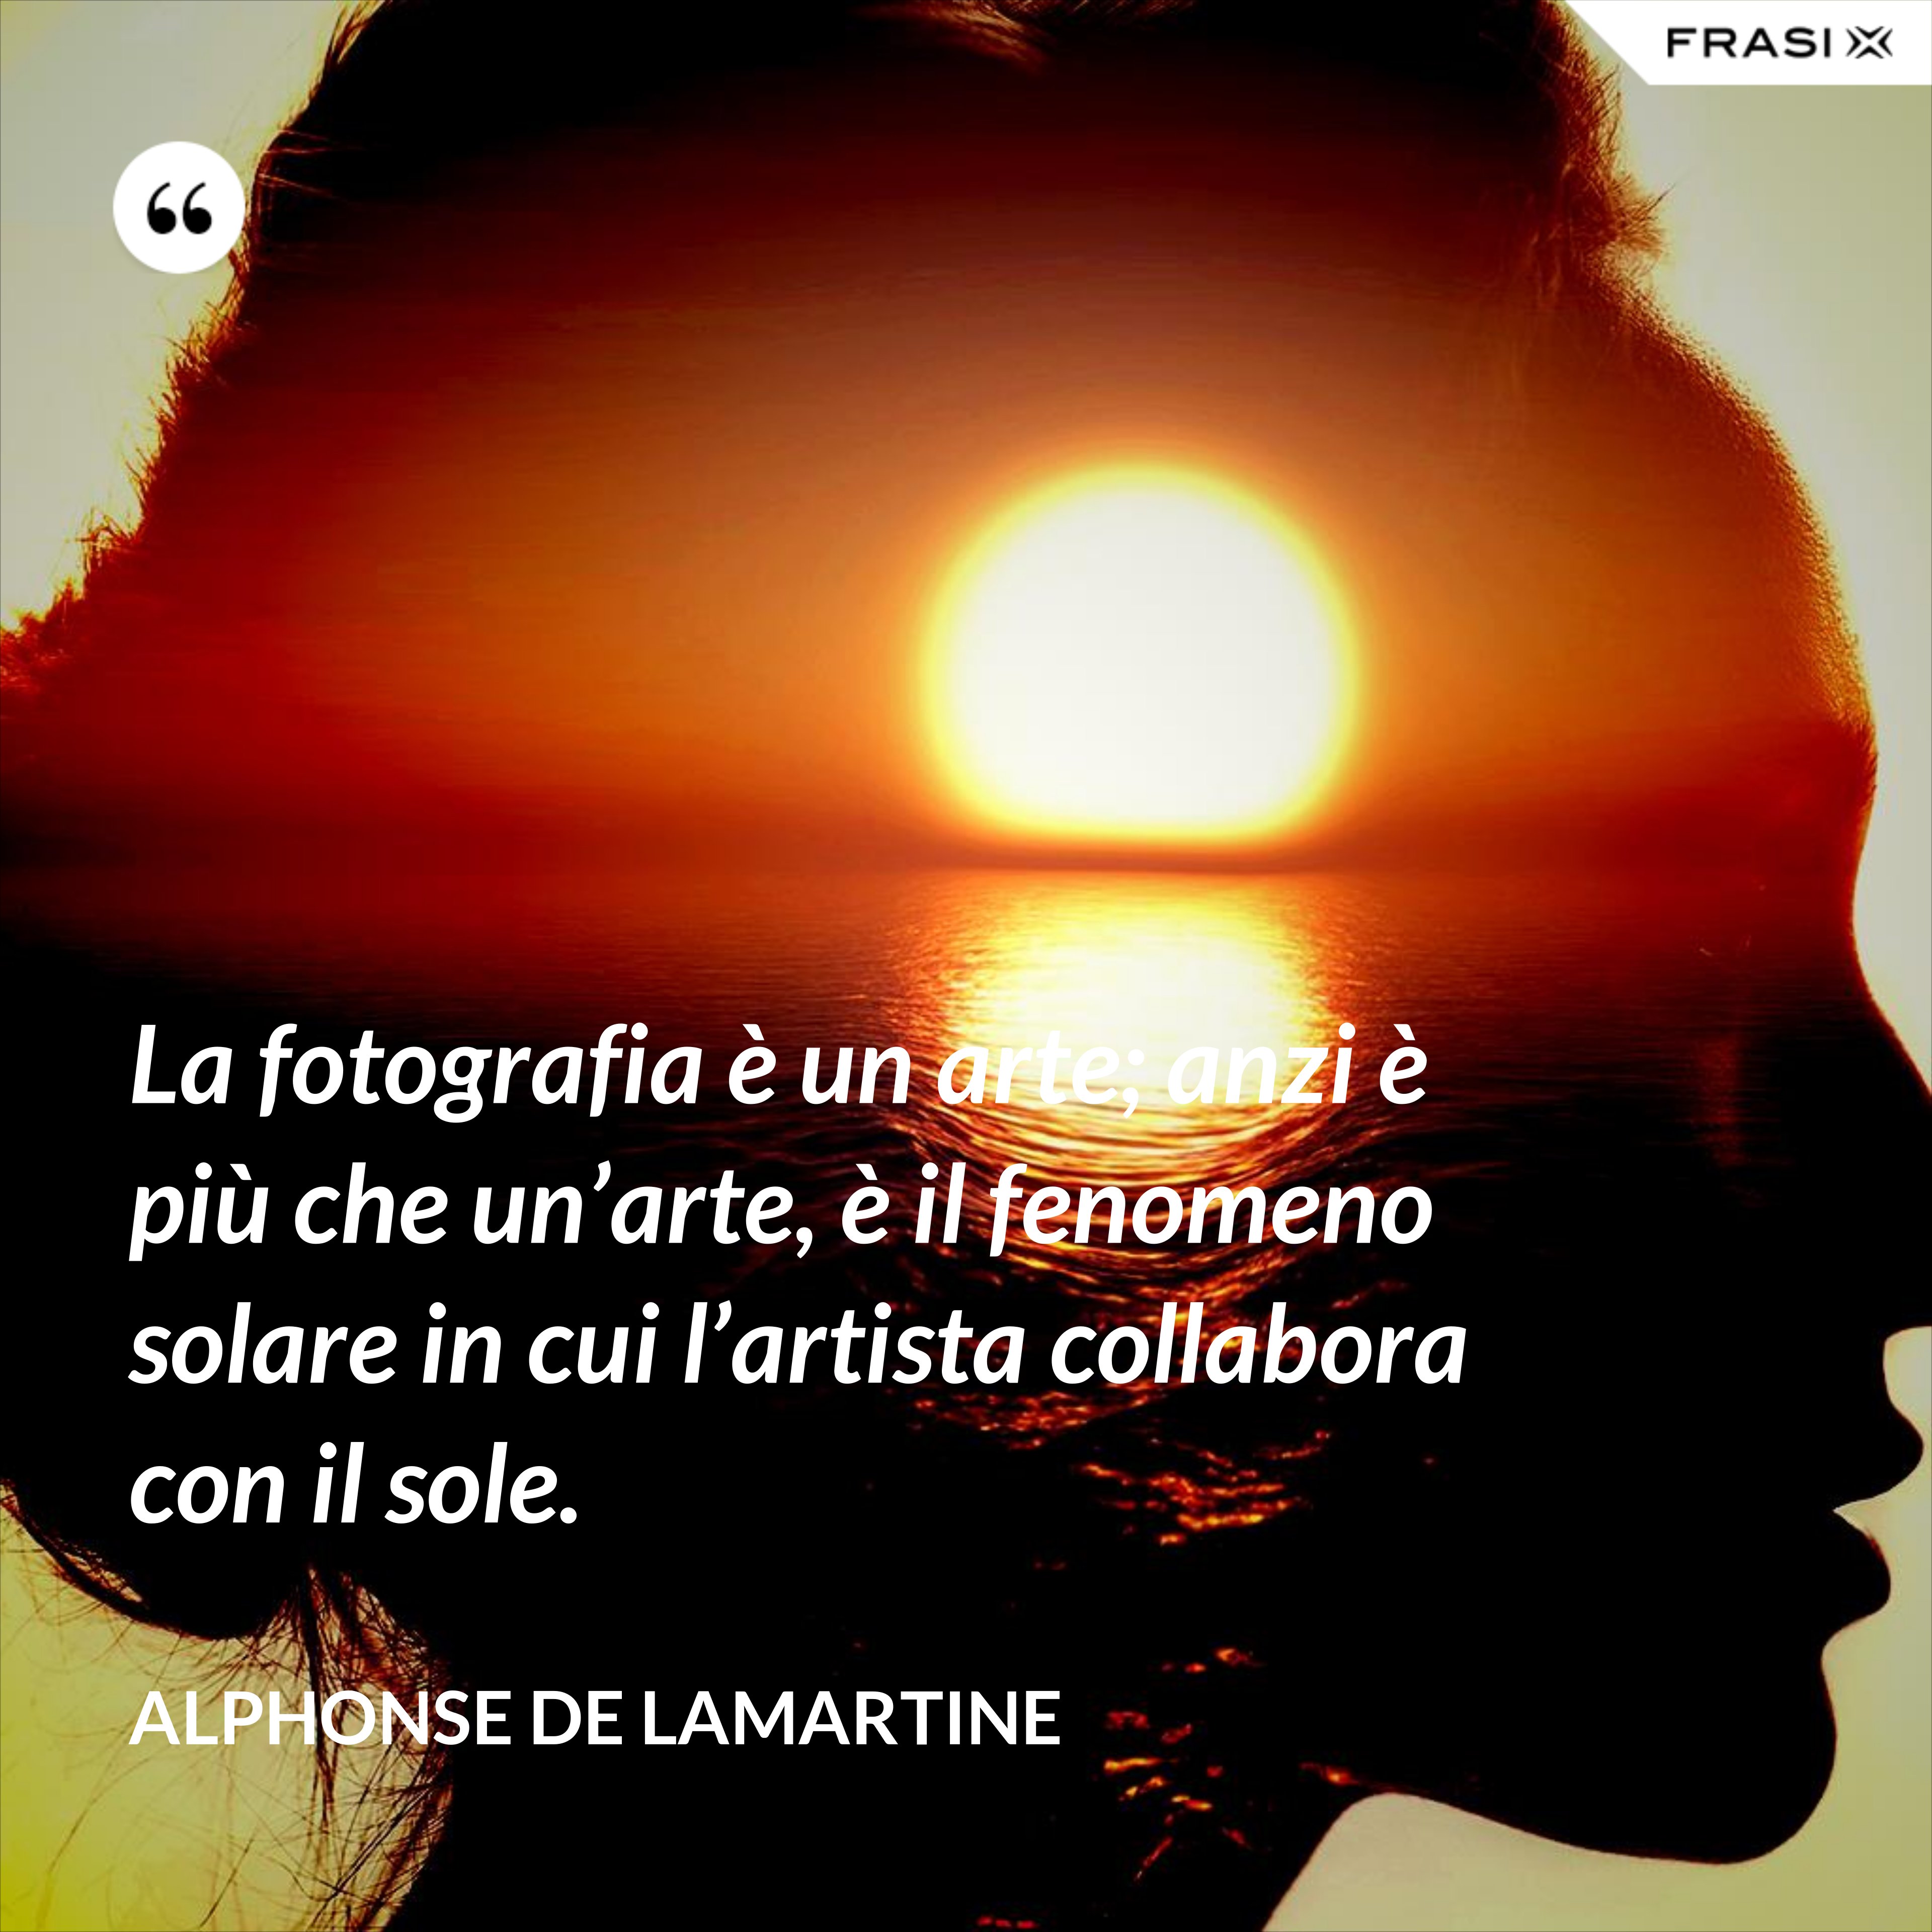 La fotografia è un arte; anzi è più che un’arte, è il fenomeno solare in cui l’artista collabora con il sole. - Alphonse de Lamartine